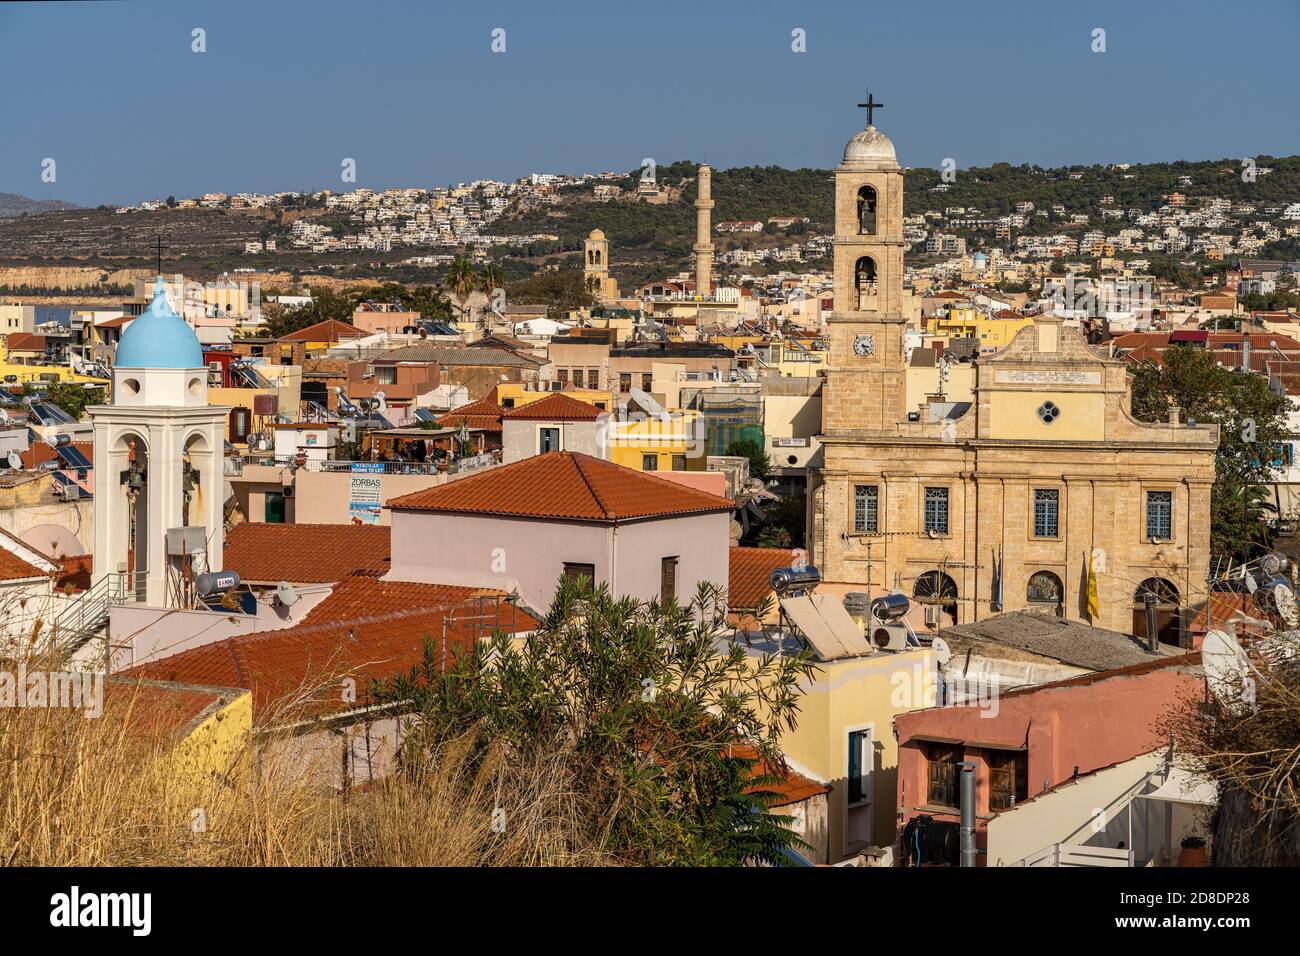 Blick auf die Altstadt mit der Kathedrale der drei Märtyrer und der Kathedrale Mariä Aufnahme in den Himmel in Chania, Kreta, Griechenland, Europa   | Stock Photo